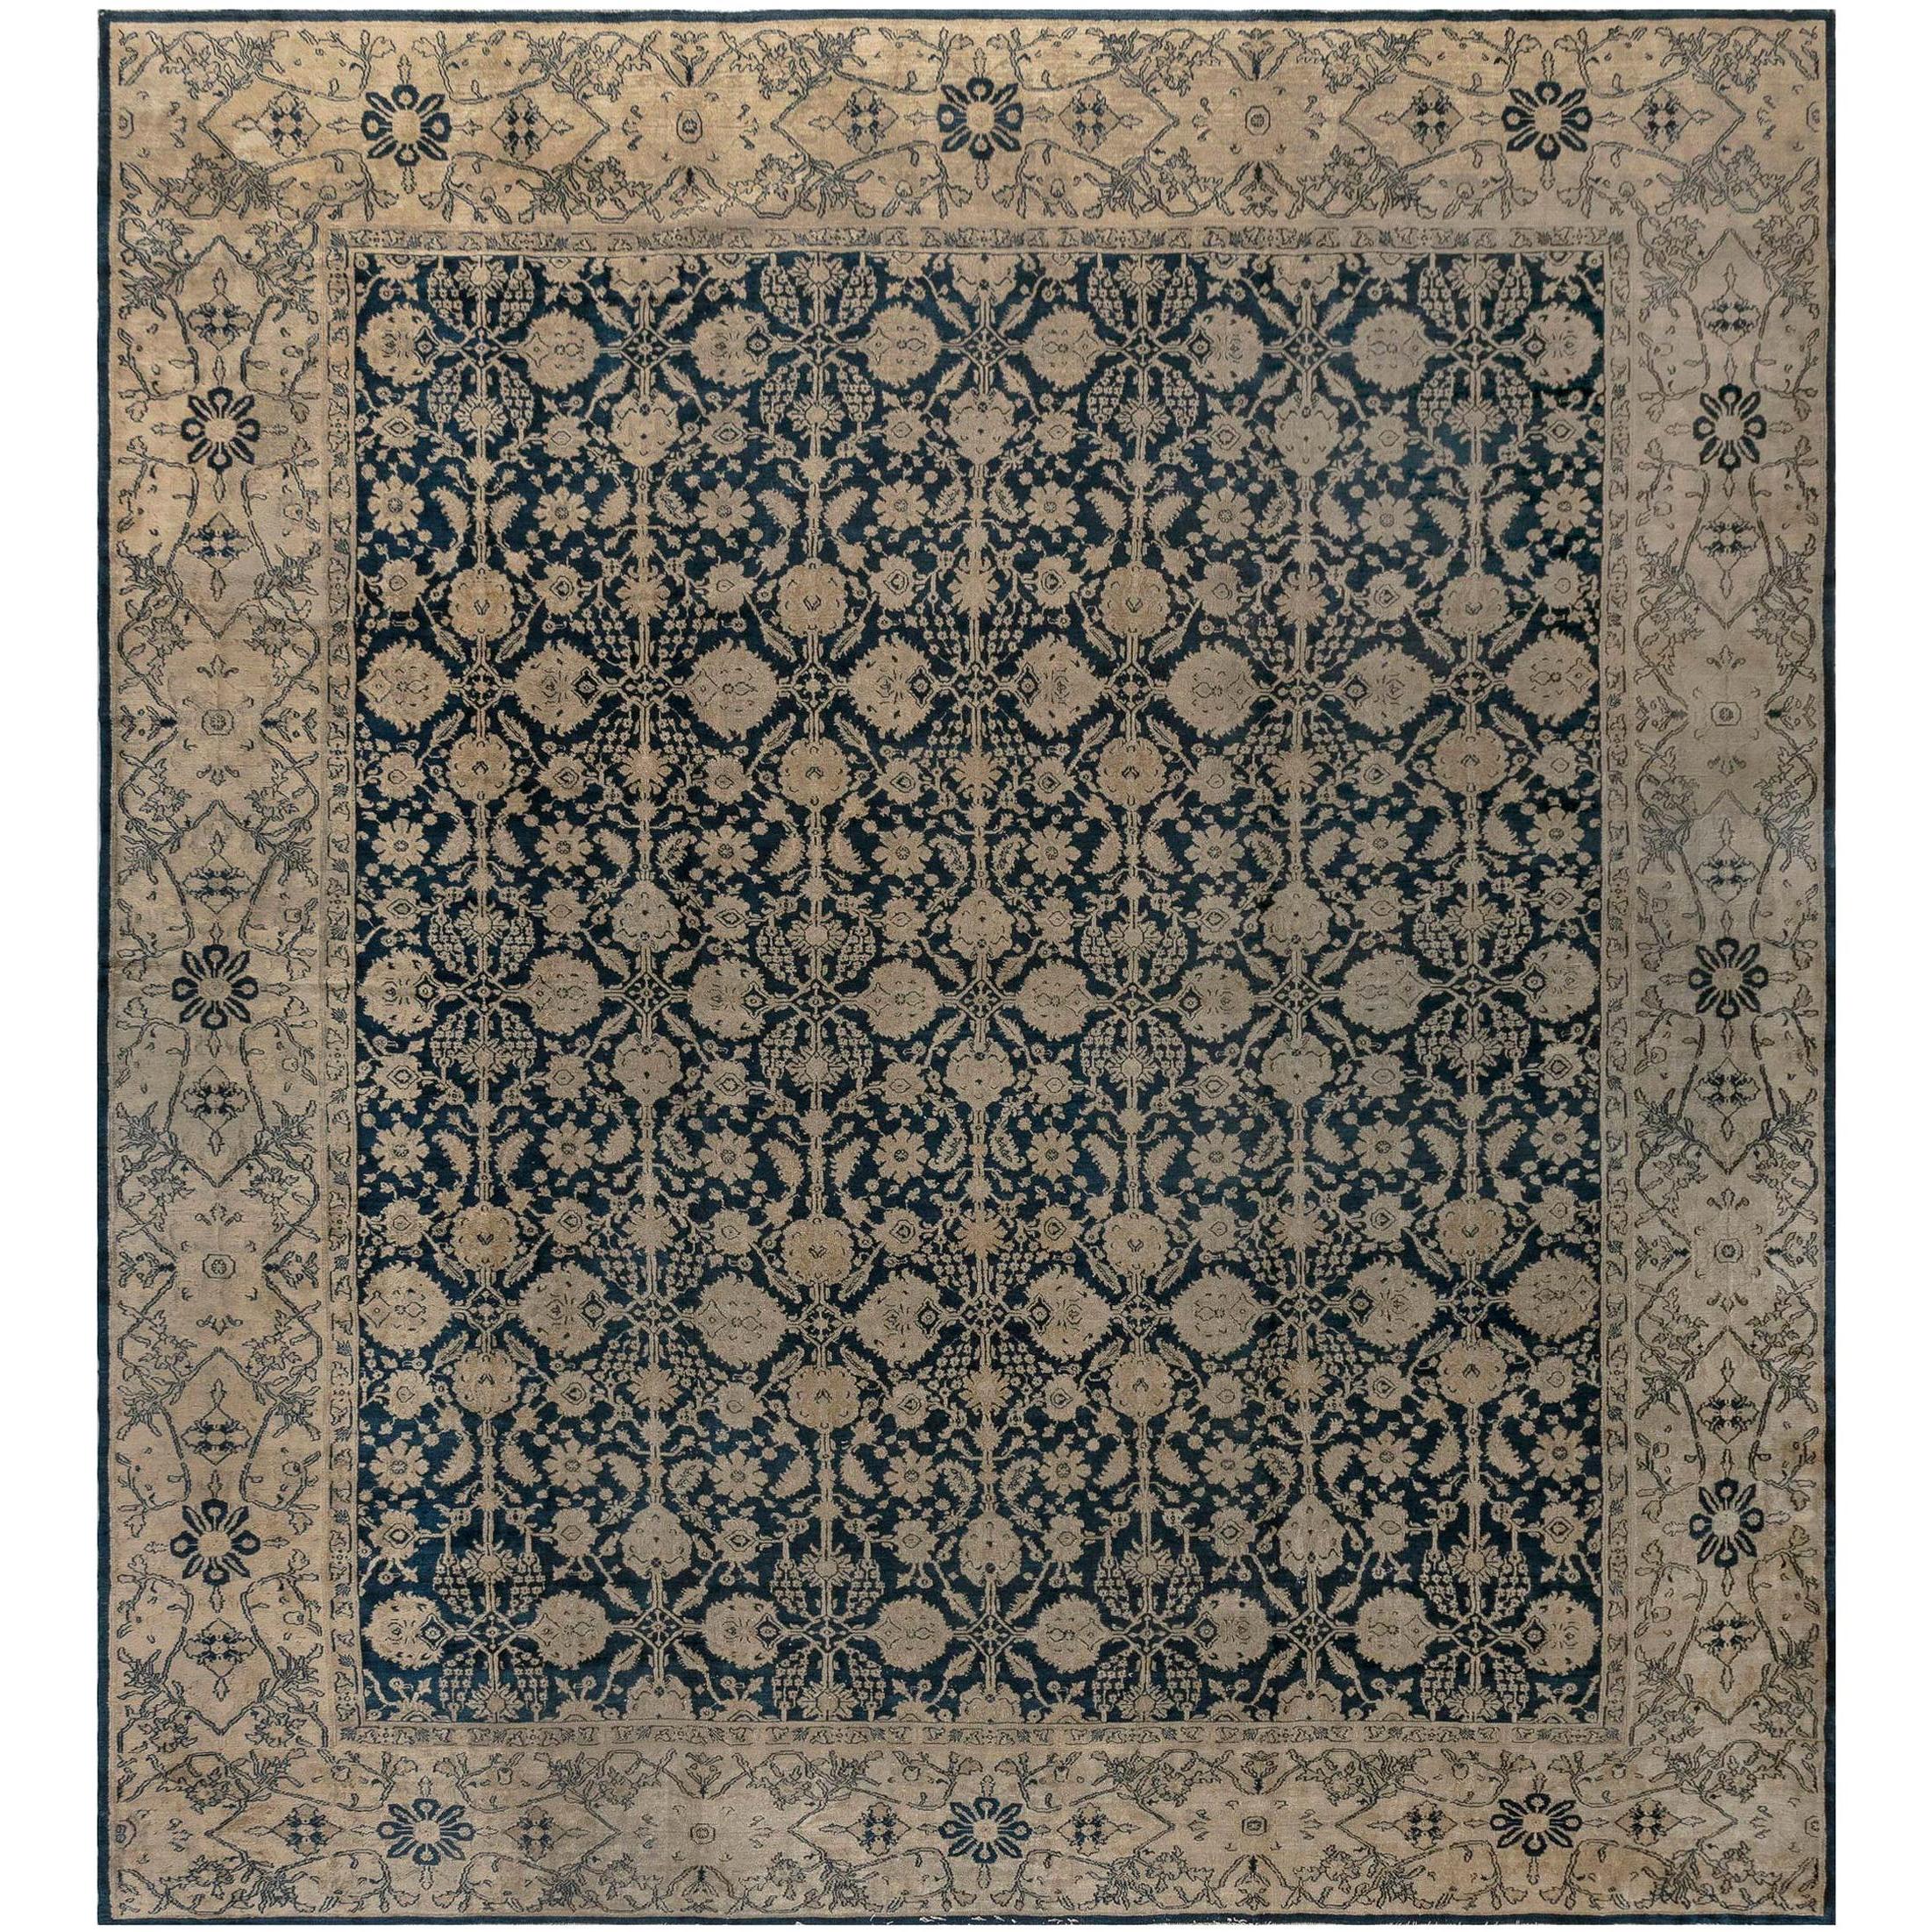 Authentischer indischer Agra-Teppich aus dem 19.